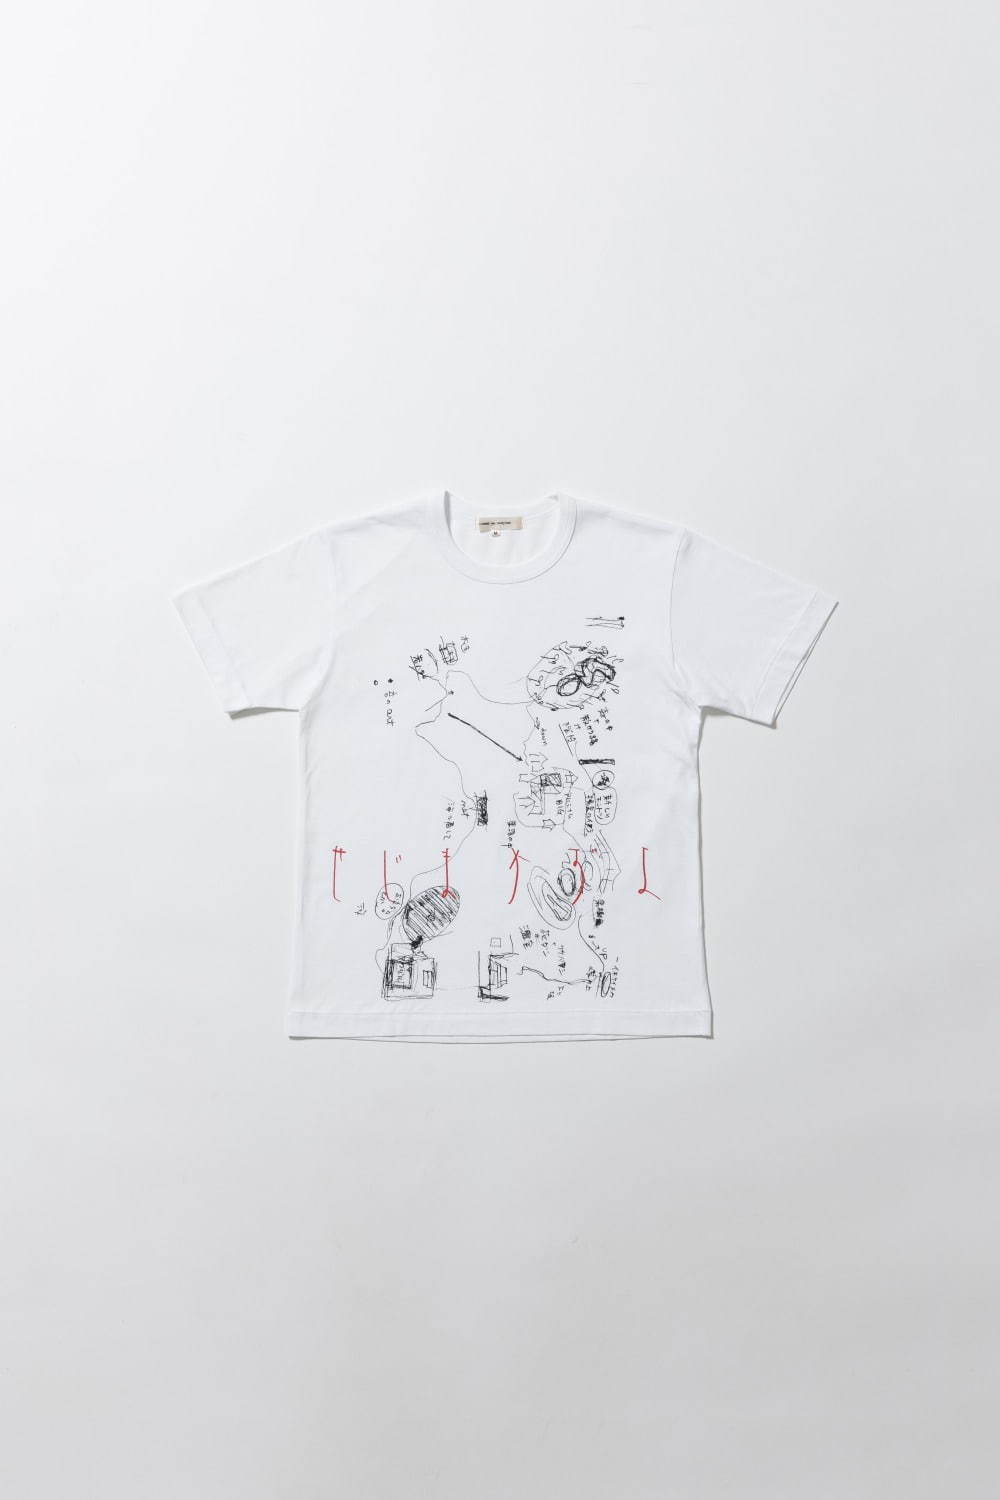 コム デ ギャルソンの新プロジェクト 川久保玲が表現者8名の作品をリデザインしたアパレル販売 ファッションプレス